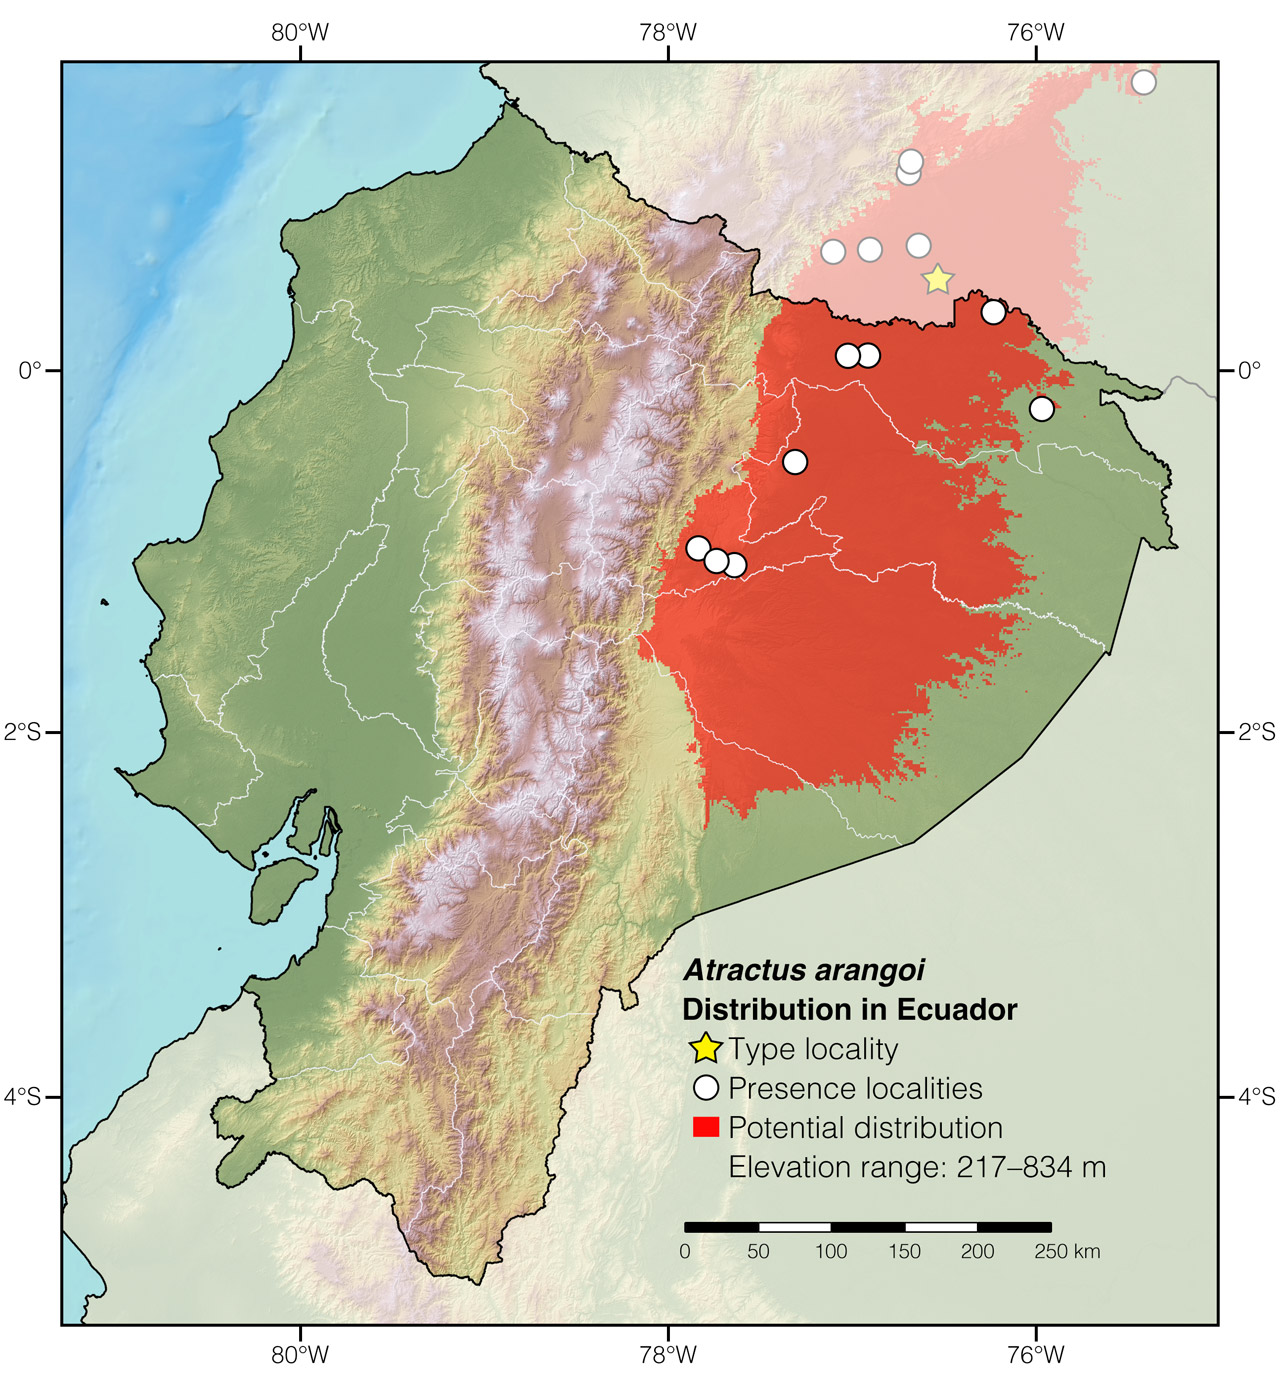 Distribution of Atractus arangoi in Ecuador